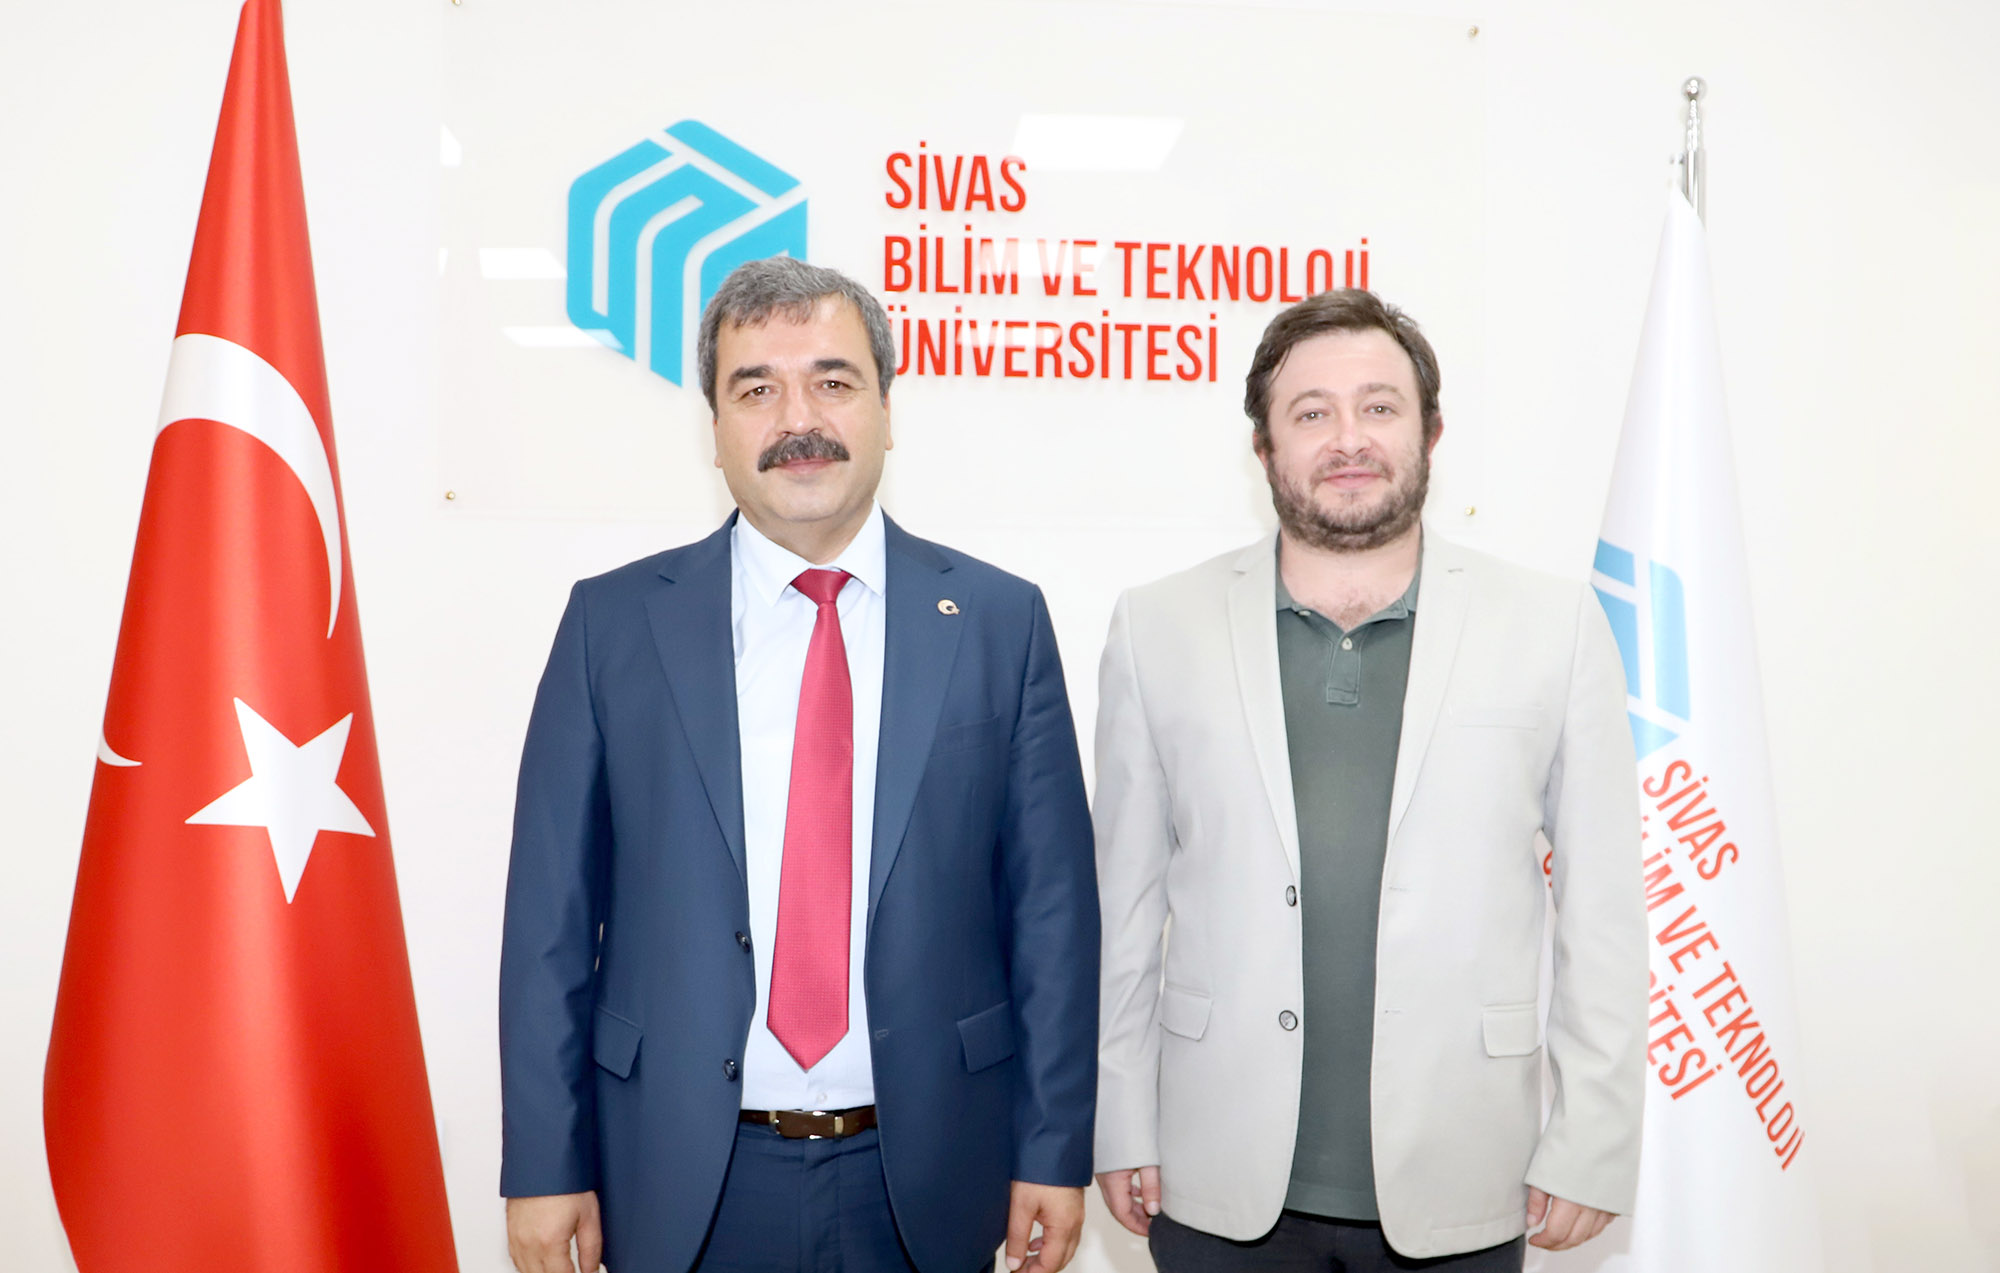 Sivas Bilim ve Teknoloji Üniversitesi (SBTÜ) Bünyesinde Hazırlanan Bilimsel Araştırma Projesine TÜBİTAK Desteği